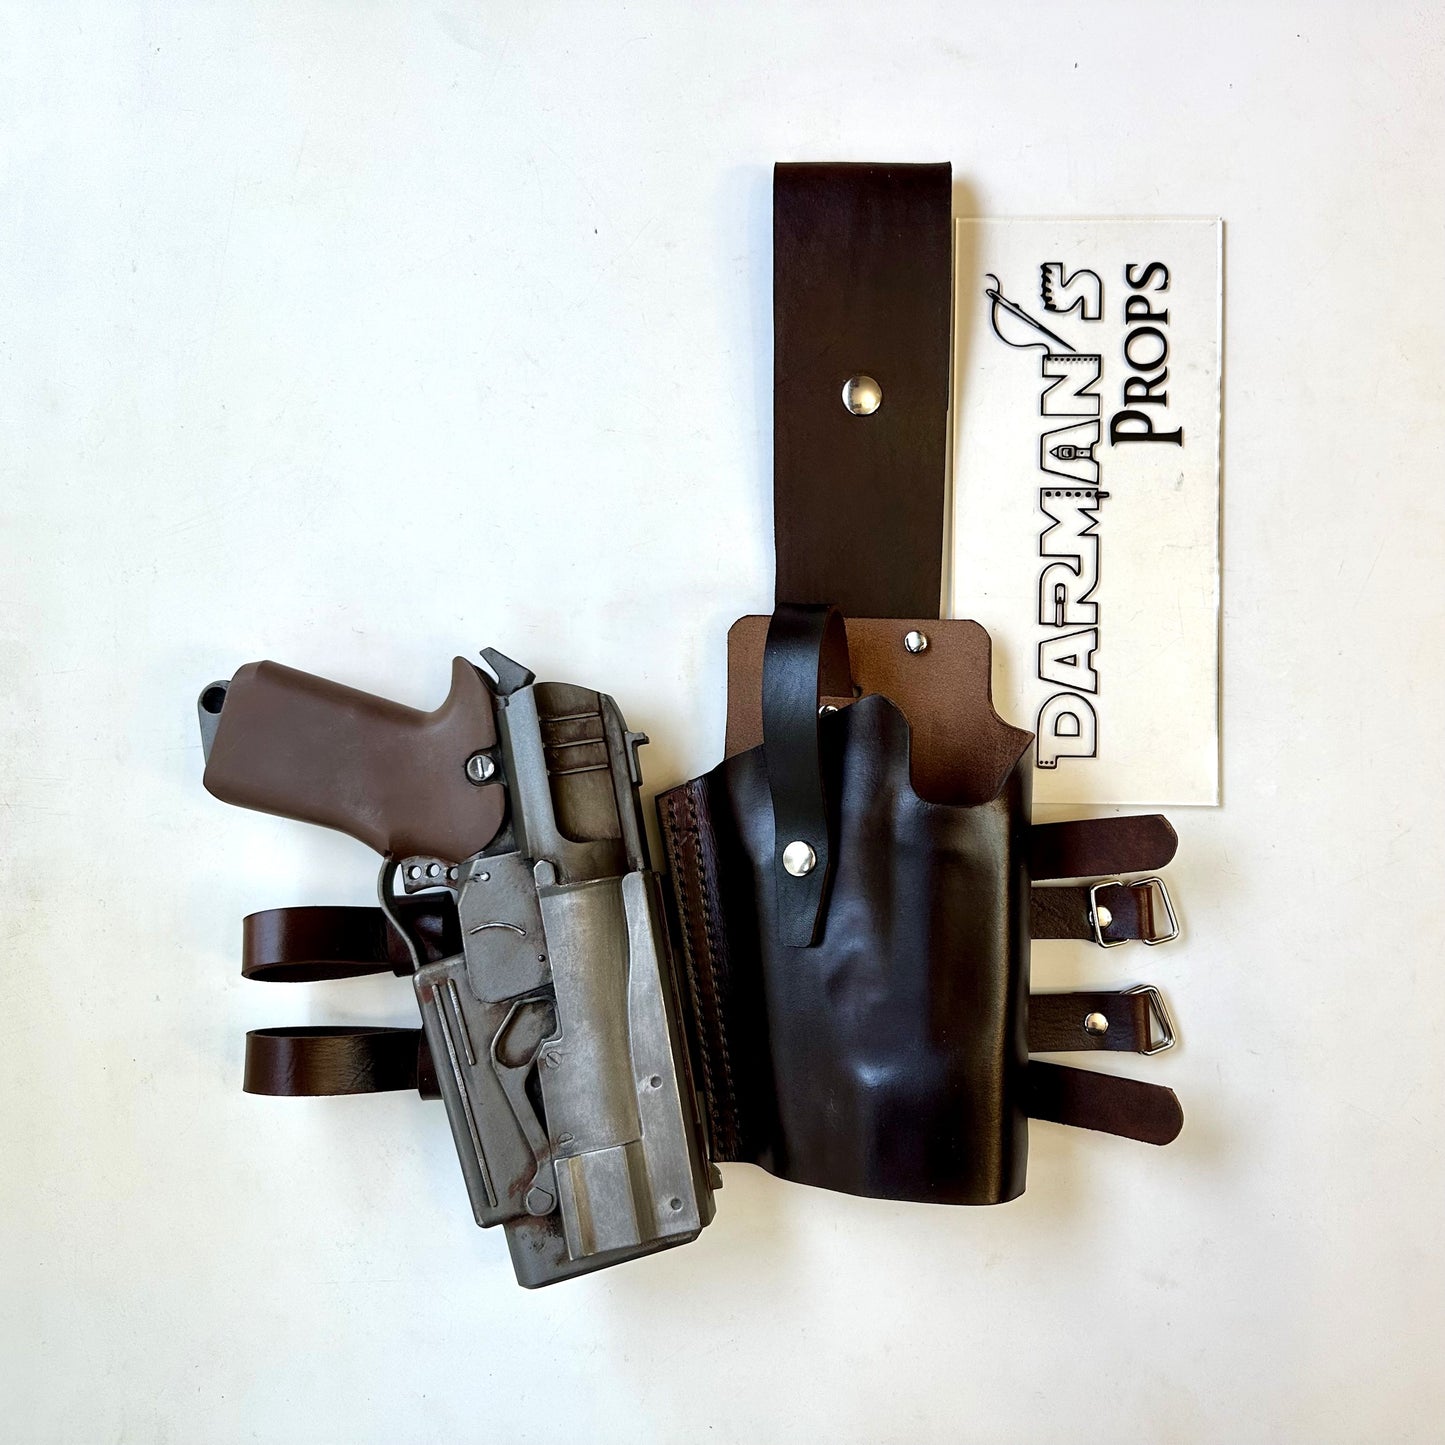 Fallout 10mm pistol gun Single drop leg holster version 2